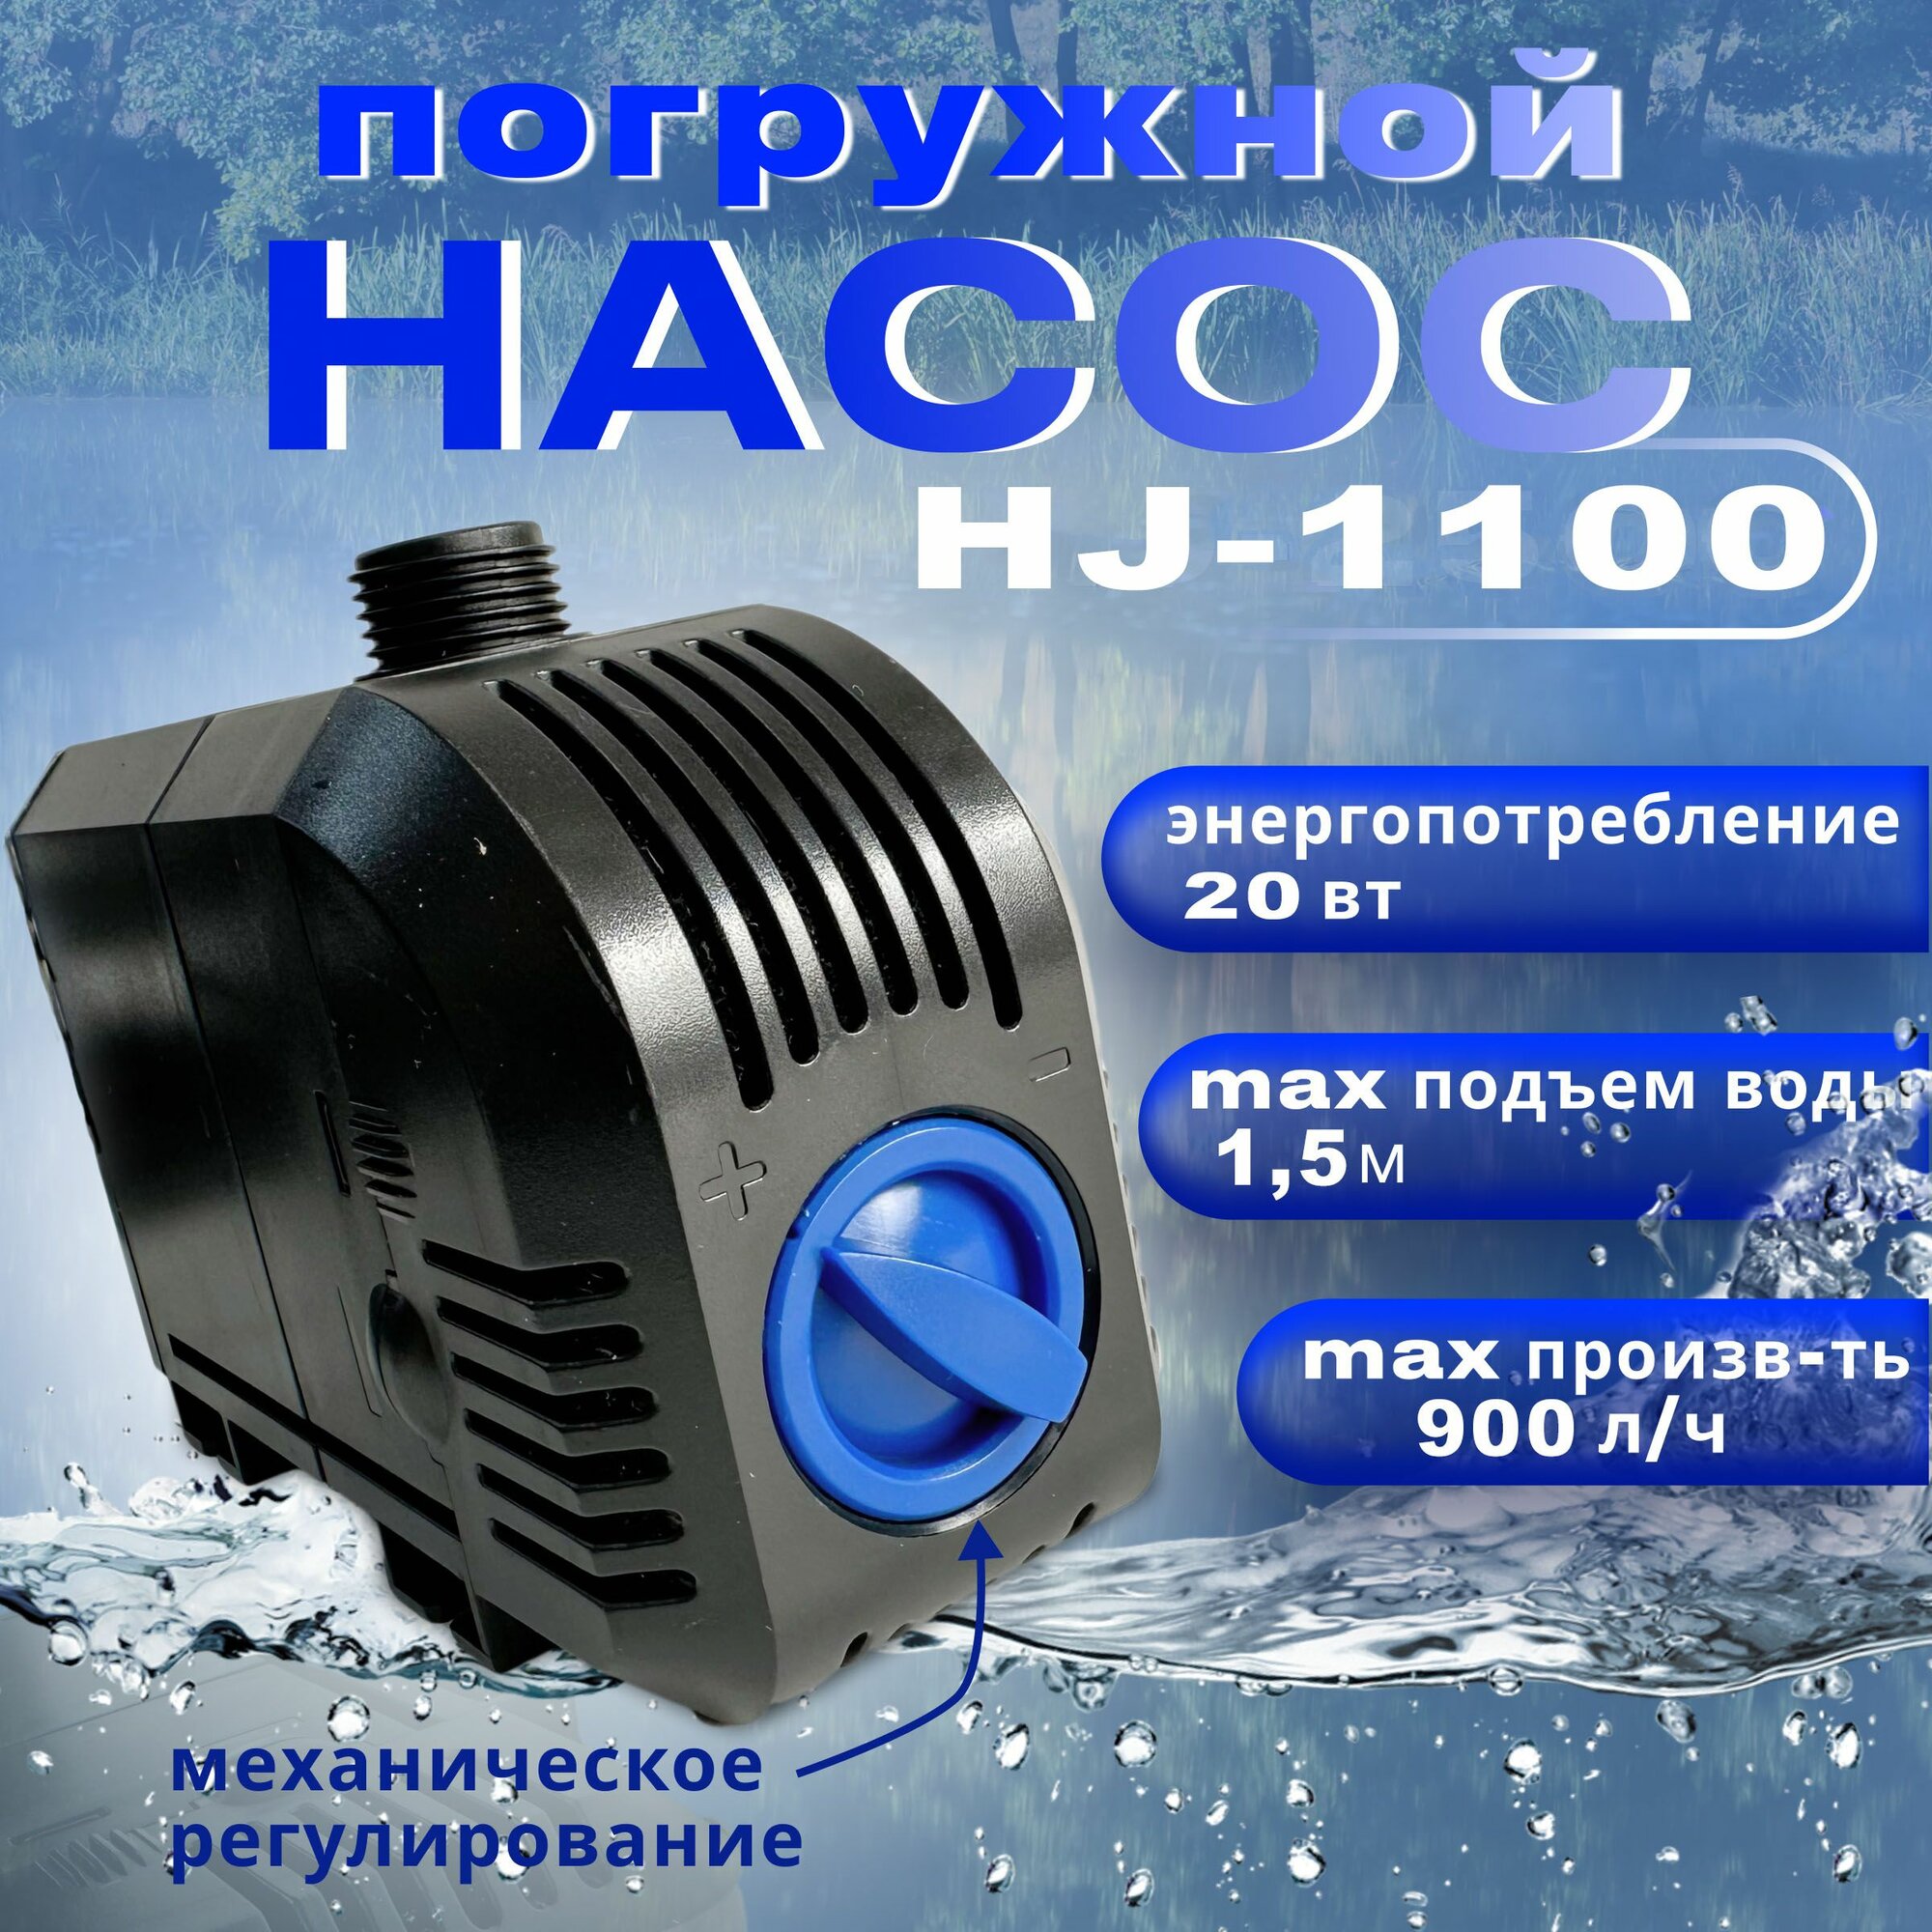 Насос для фонтана регулируемый SunSun HJ 1100, производительность 900л/час, длина кабеля 1,5м